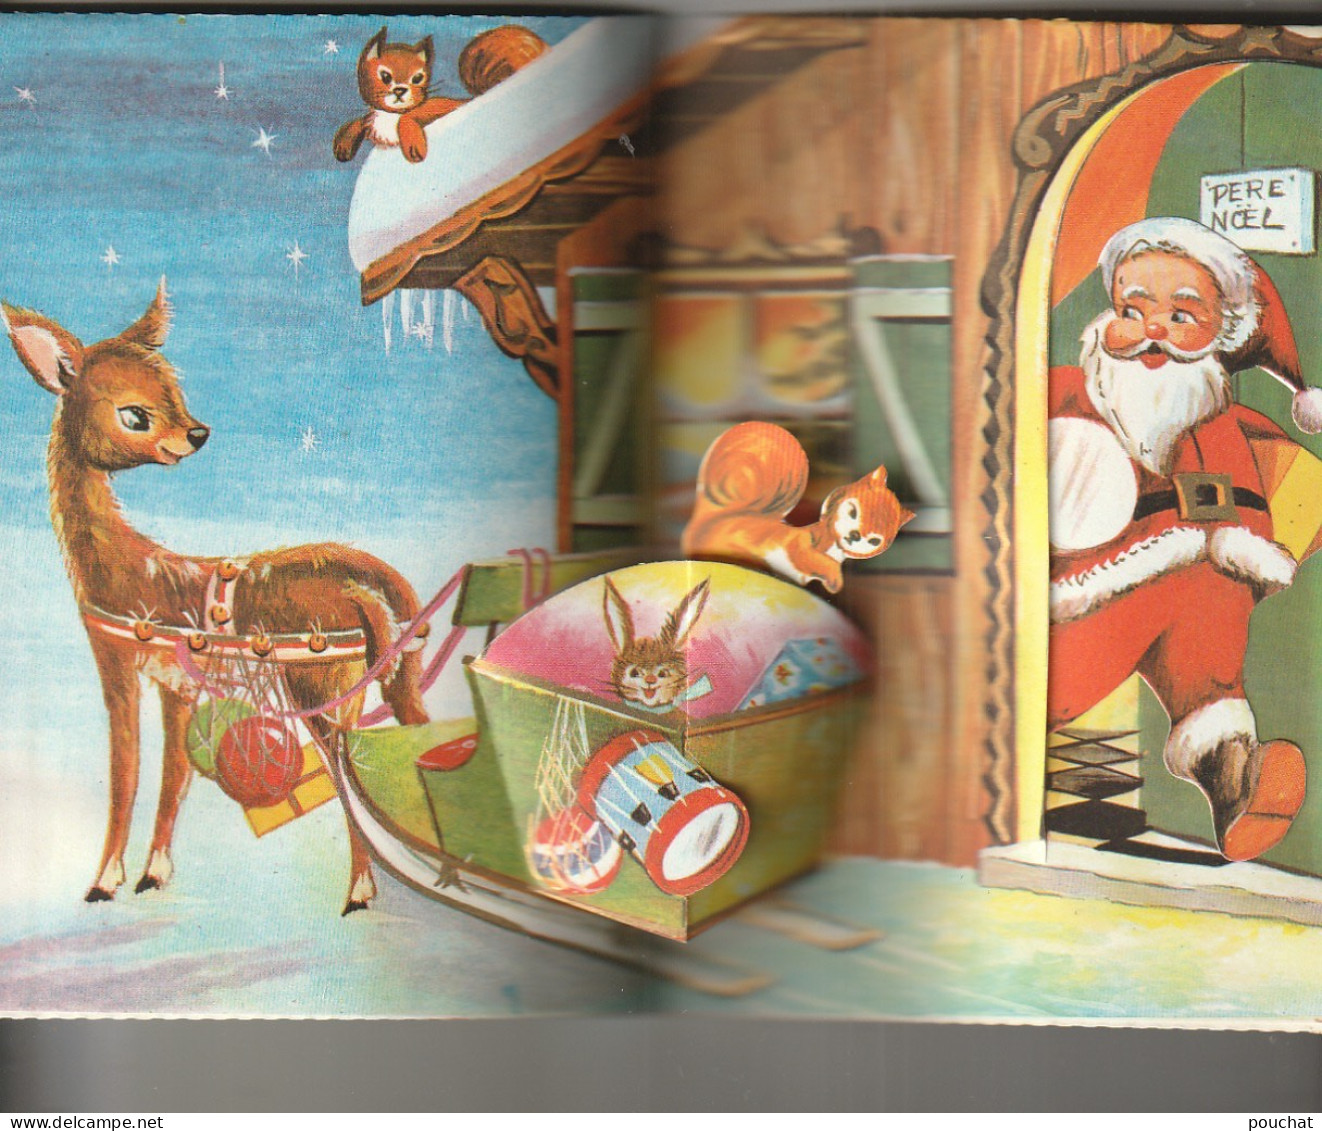 CE 32- " JOYEUX NOEL " - CARTE SYSTEME POP UP - PERE NOEL EN TRAINEAU AVEC JOUETS SOUS LA NEIGE - ILLUSTRATEUR - Santa Claus